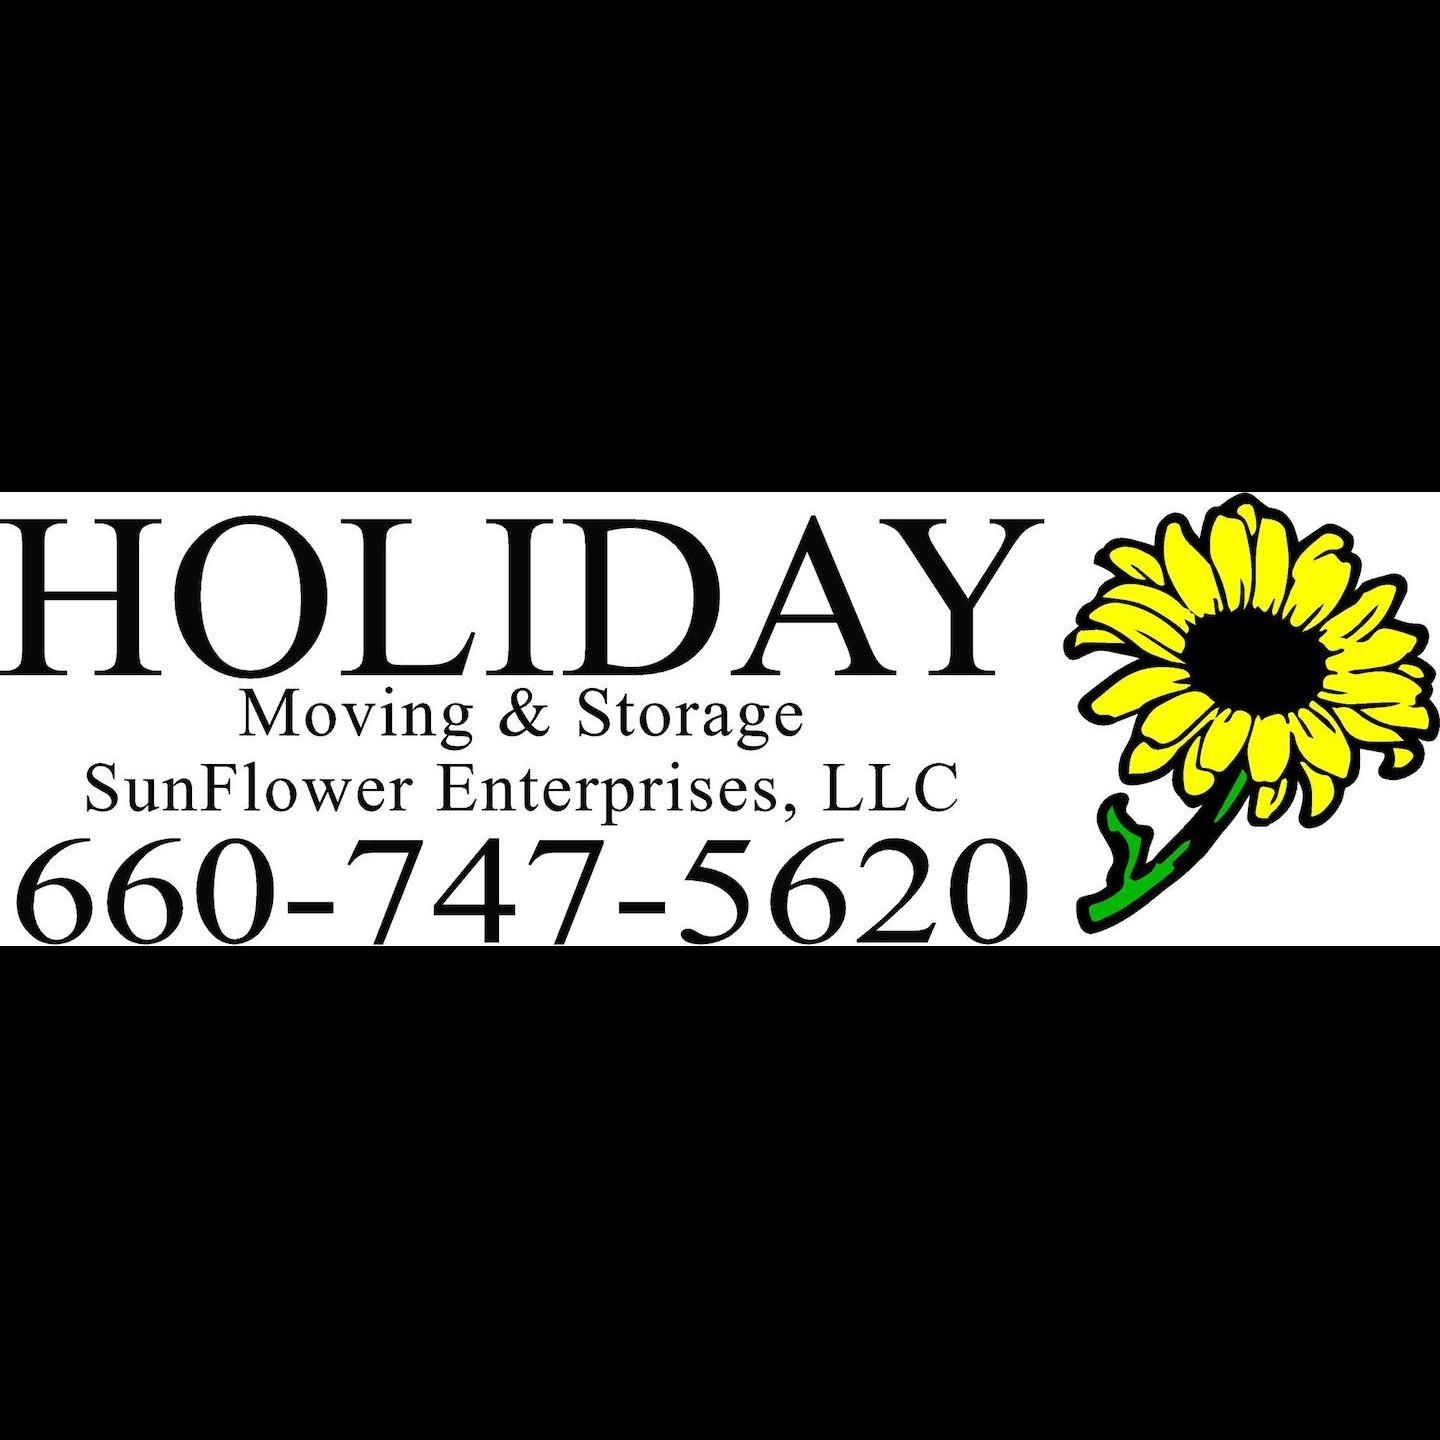 Holiday Moving & Storage Logo